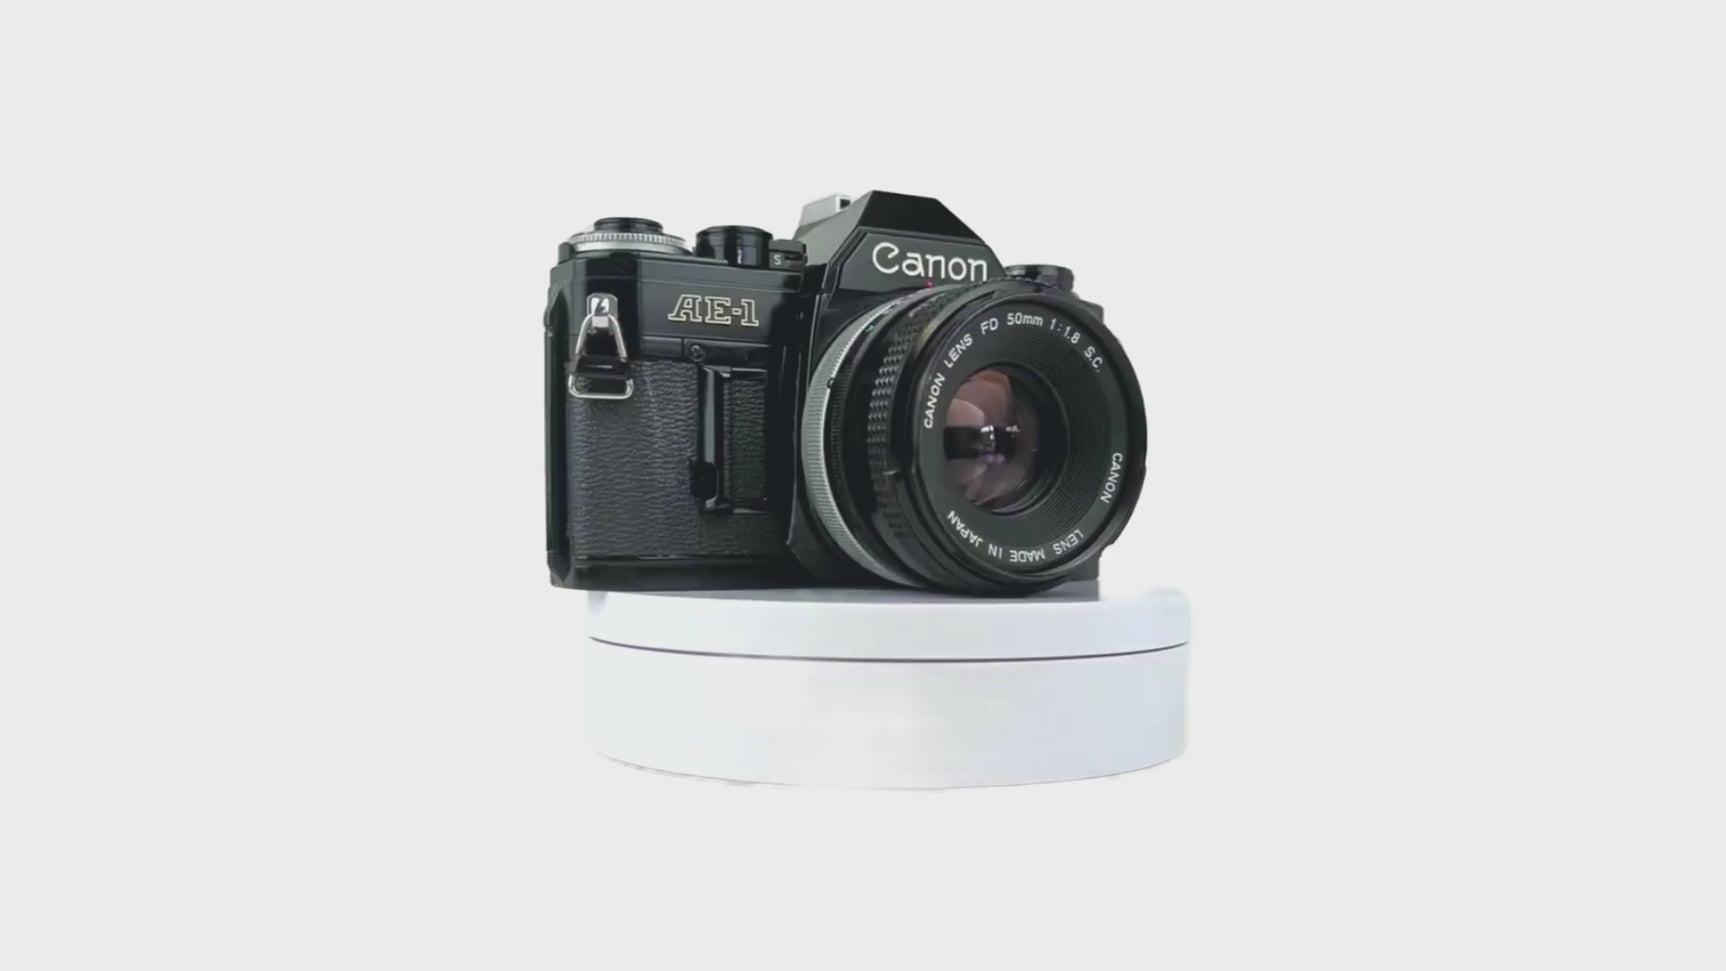 Canon AE-1 Black 35mm SLR Film Camera with Canon Prime Lens - Film Camera Store